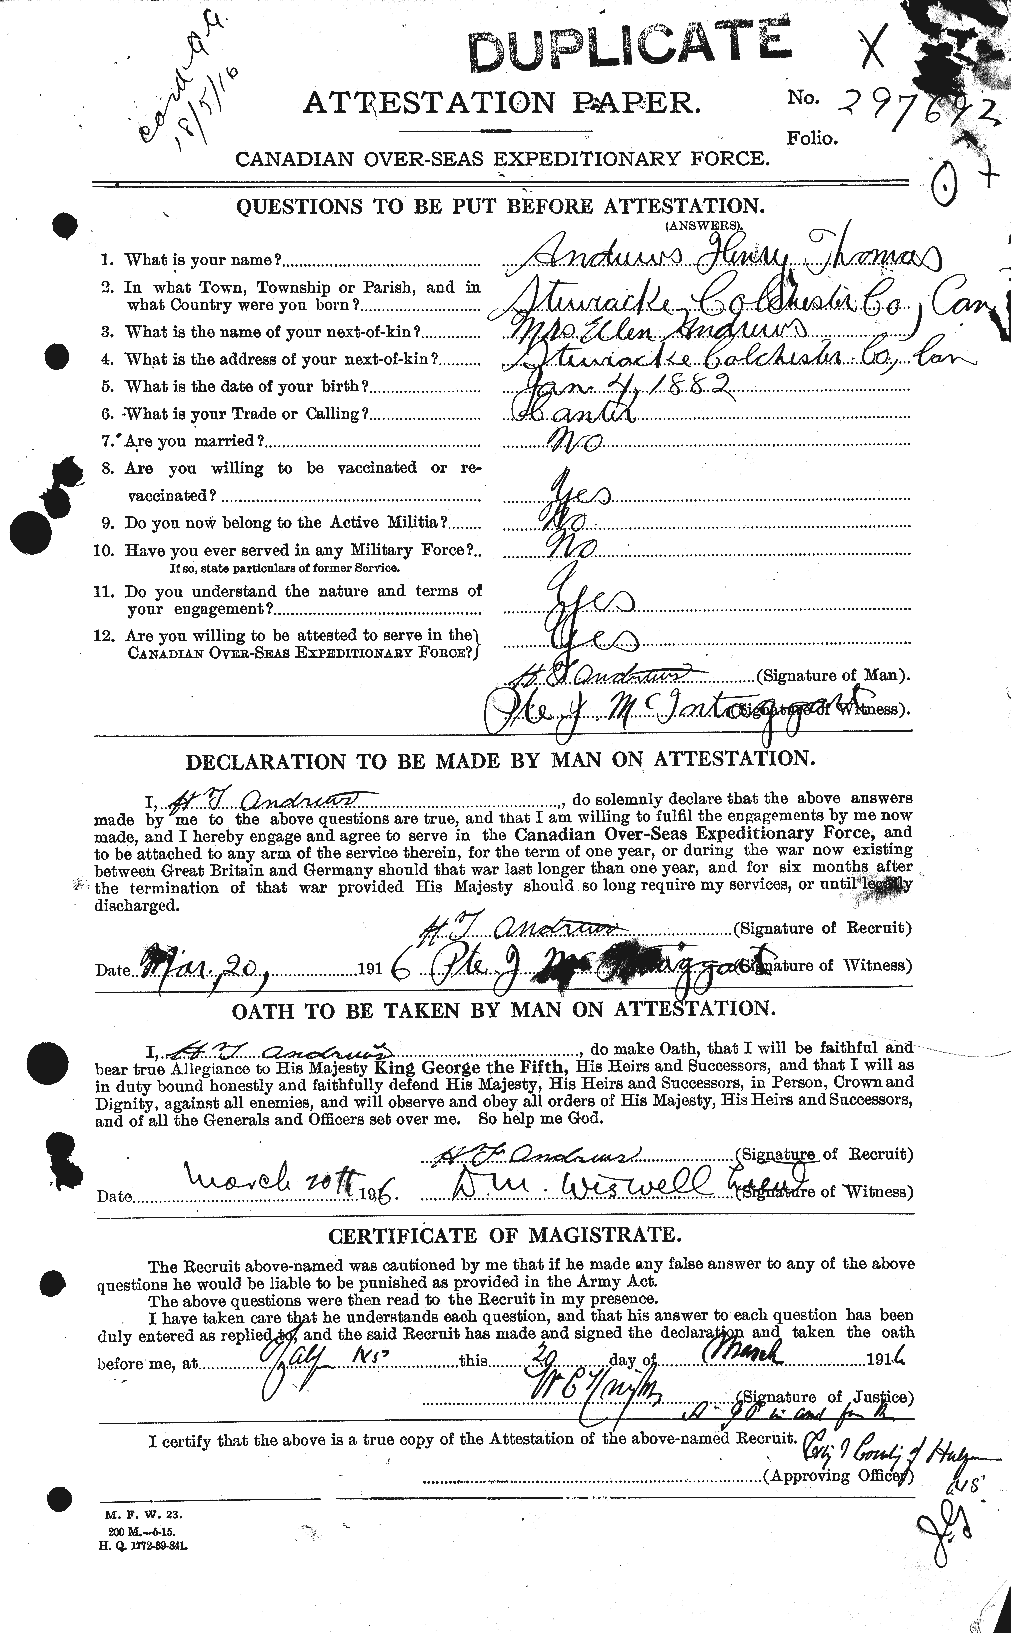 Dossiers du Personnel de la Première Guerre mondiale - CEC 210265a